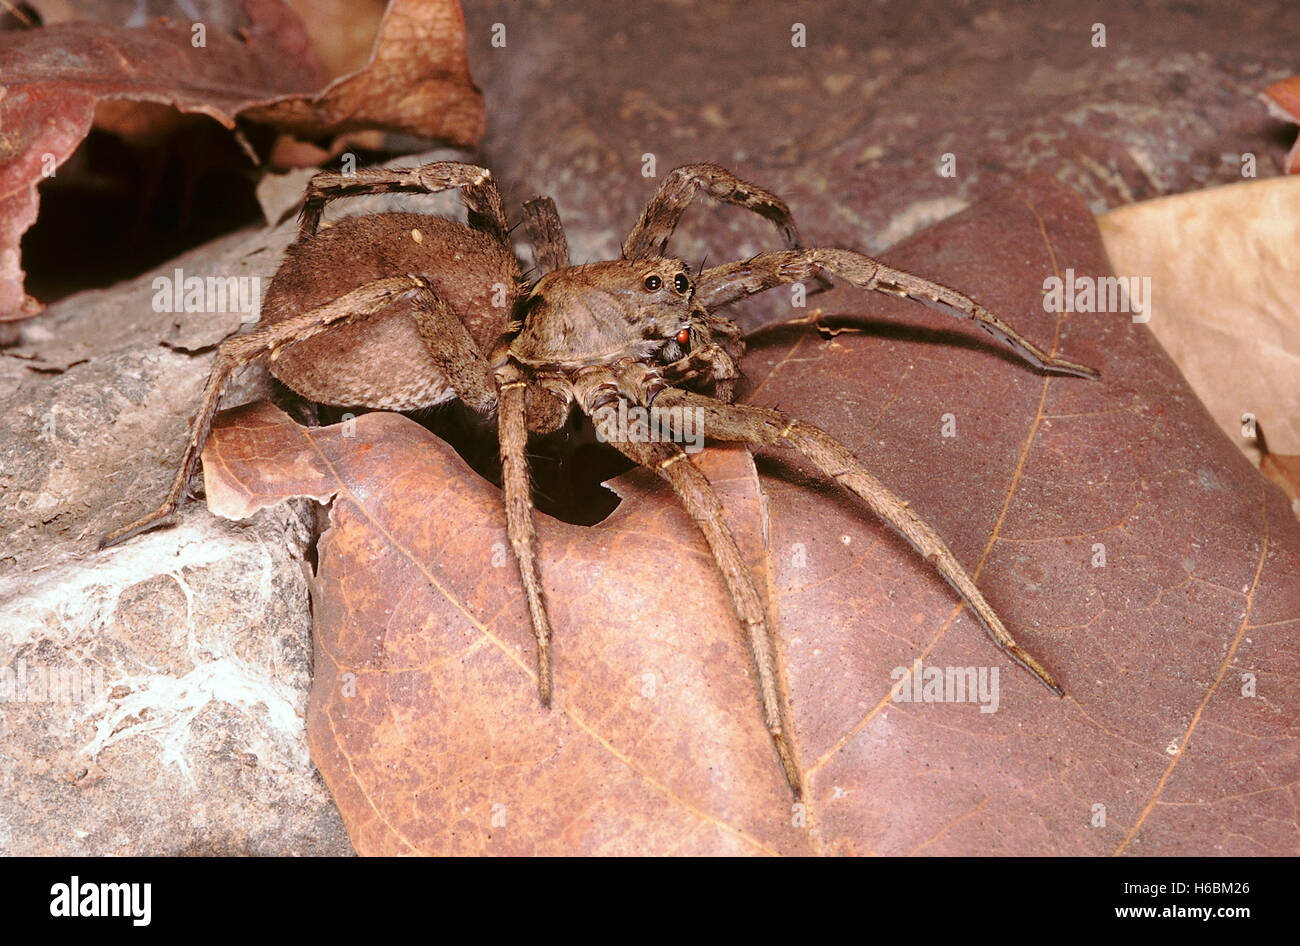 Wolf Spider. nachtaktive Spinne, die aktiv jagt seine Beute auf dem Boden anstelle von Gebäude a web. Stockfoto